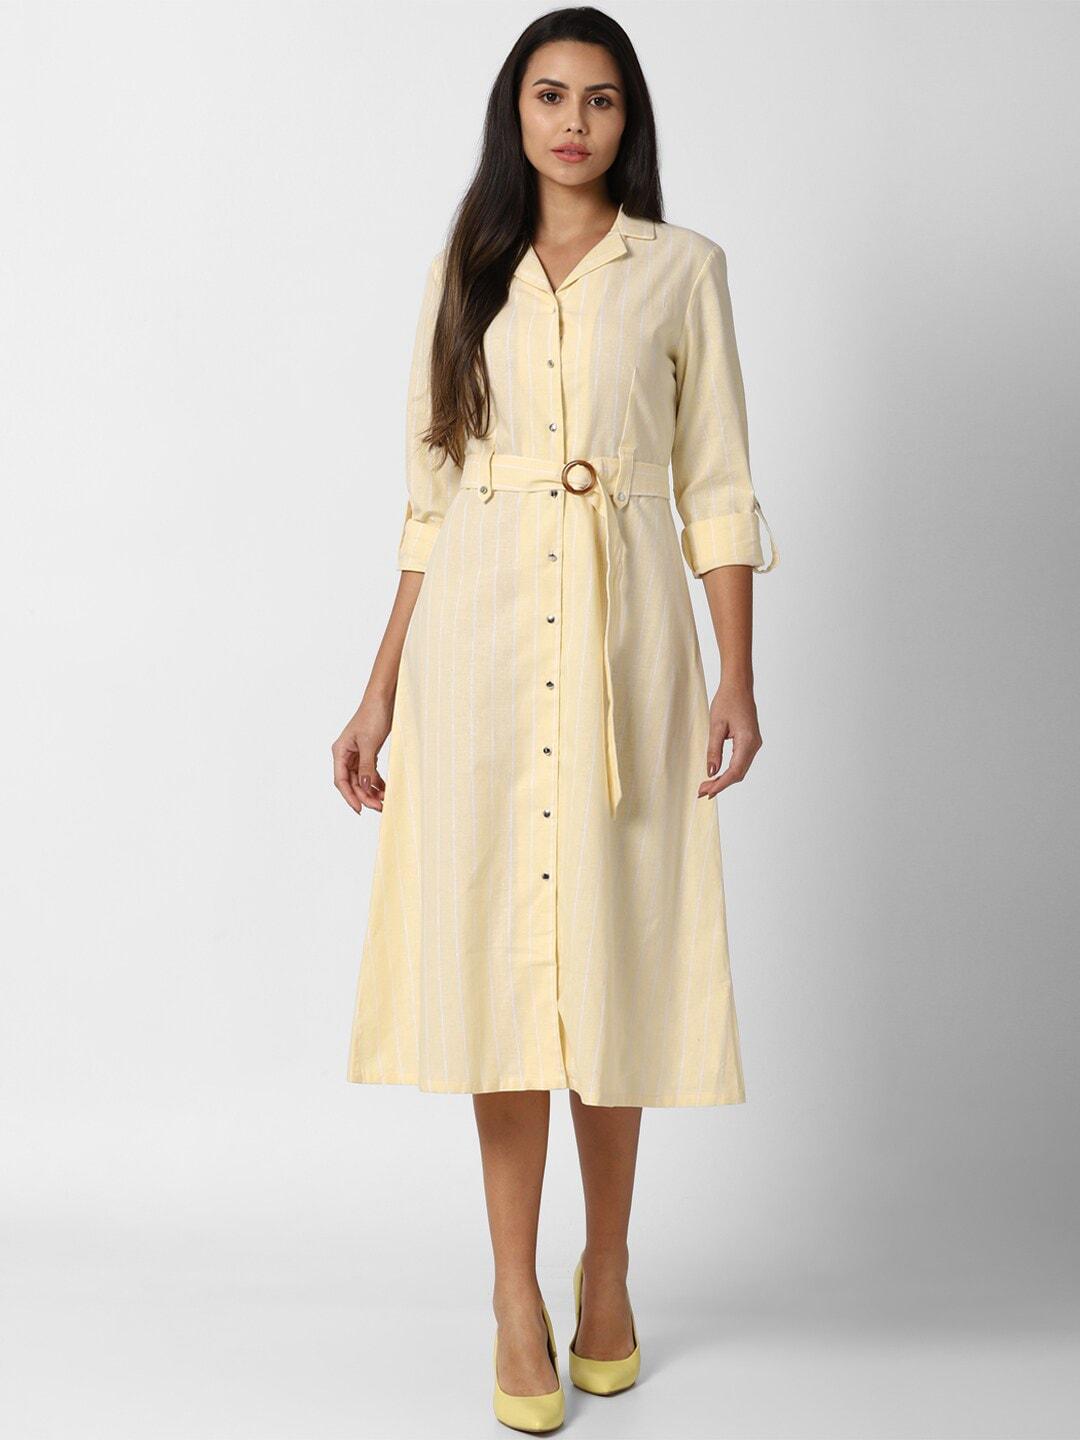 Van Heusen Woman Yellow & White Striped Shirt Midi Dress